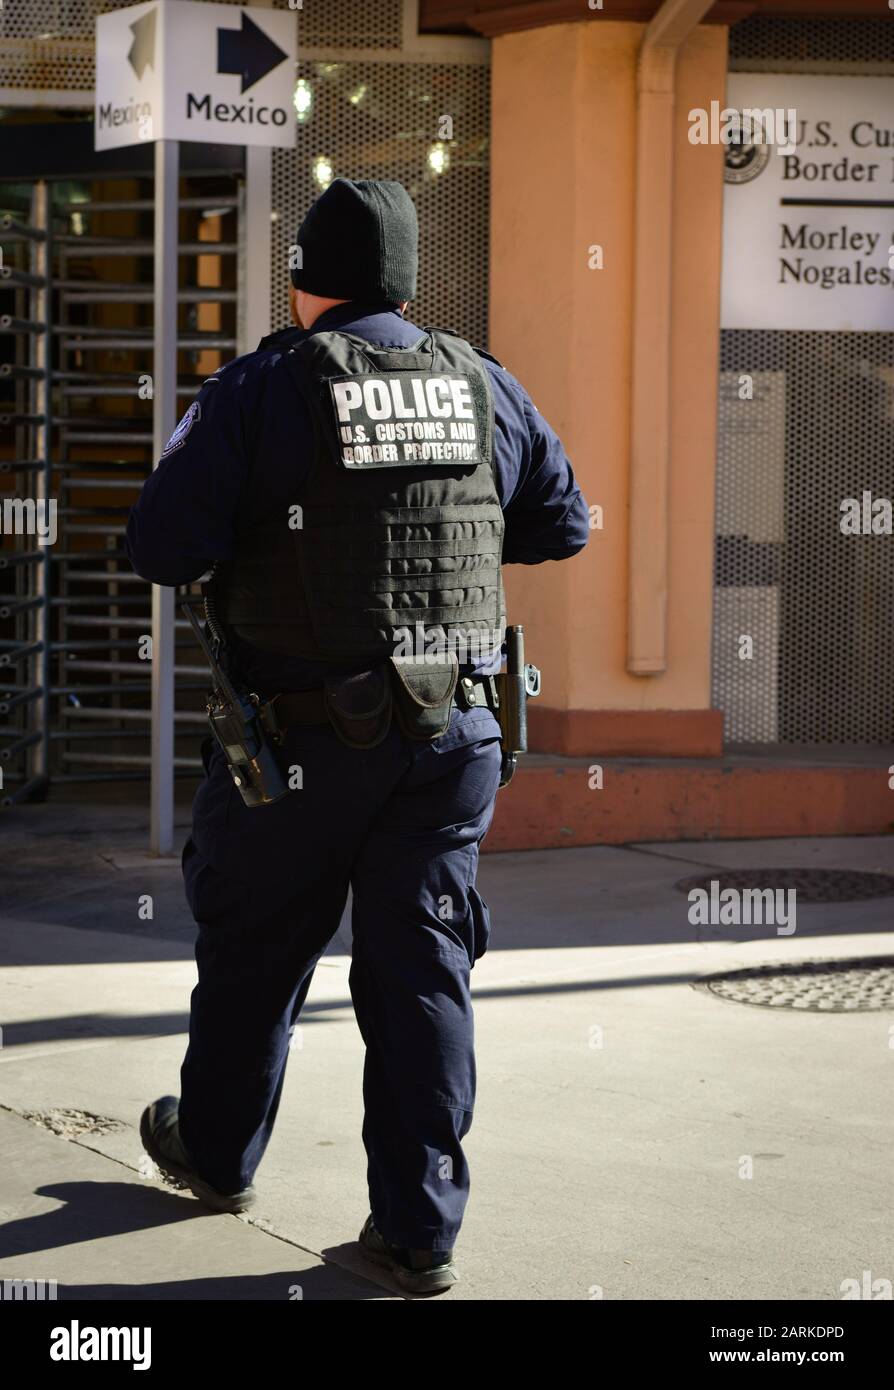 Vue arrière d'un policier américain des douanes et de la protection des frontières à la frontière américaine avec le Mexique au port d'entrée de Morley Gate à Nogales, AZ, États-Unis Banque D'Images